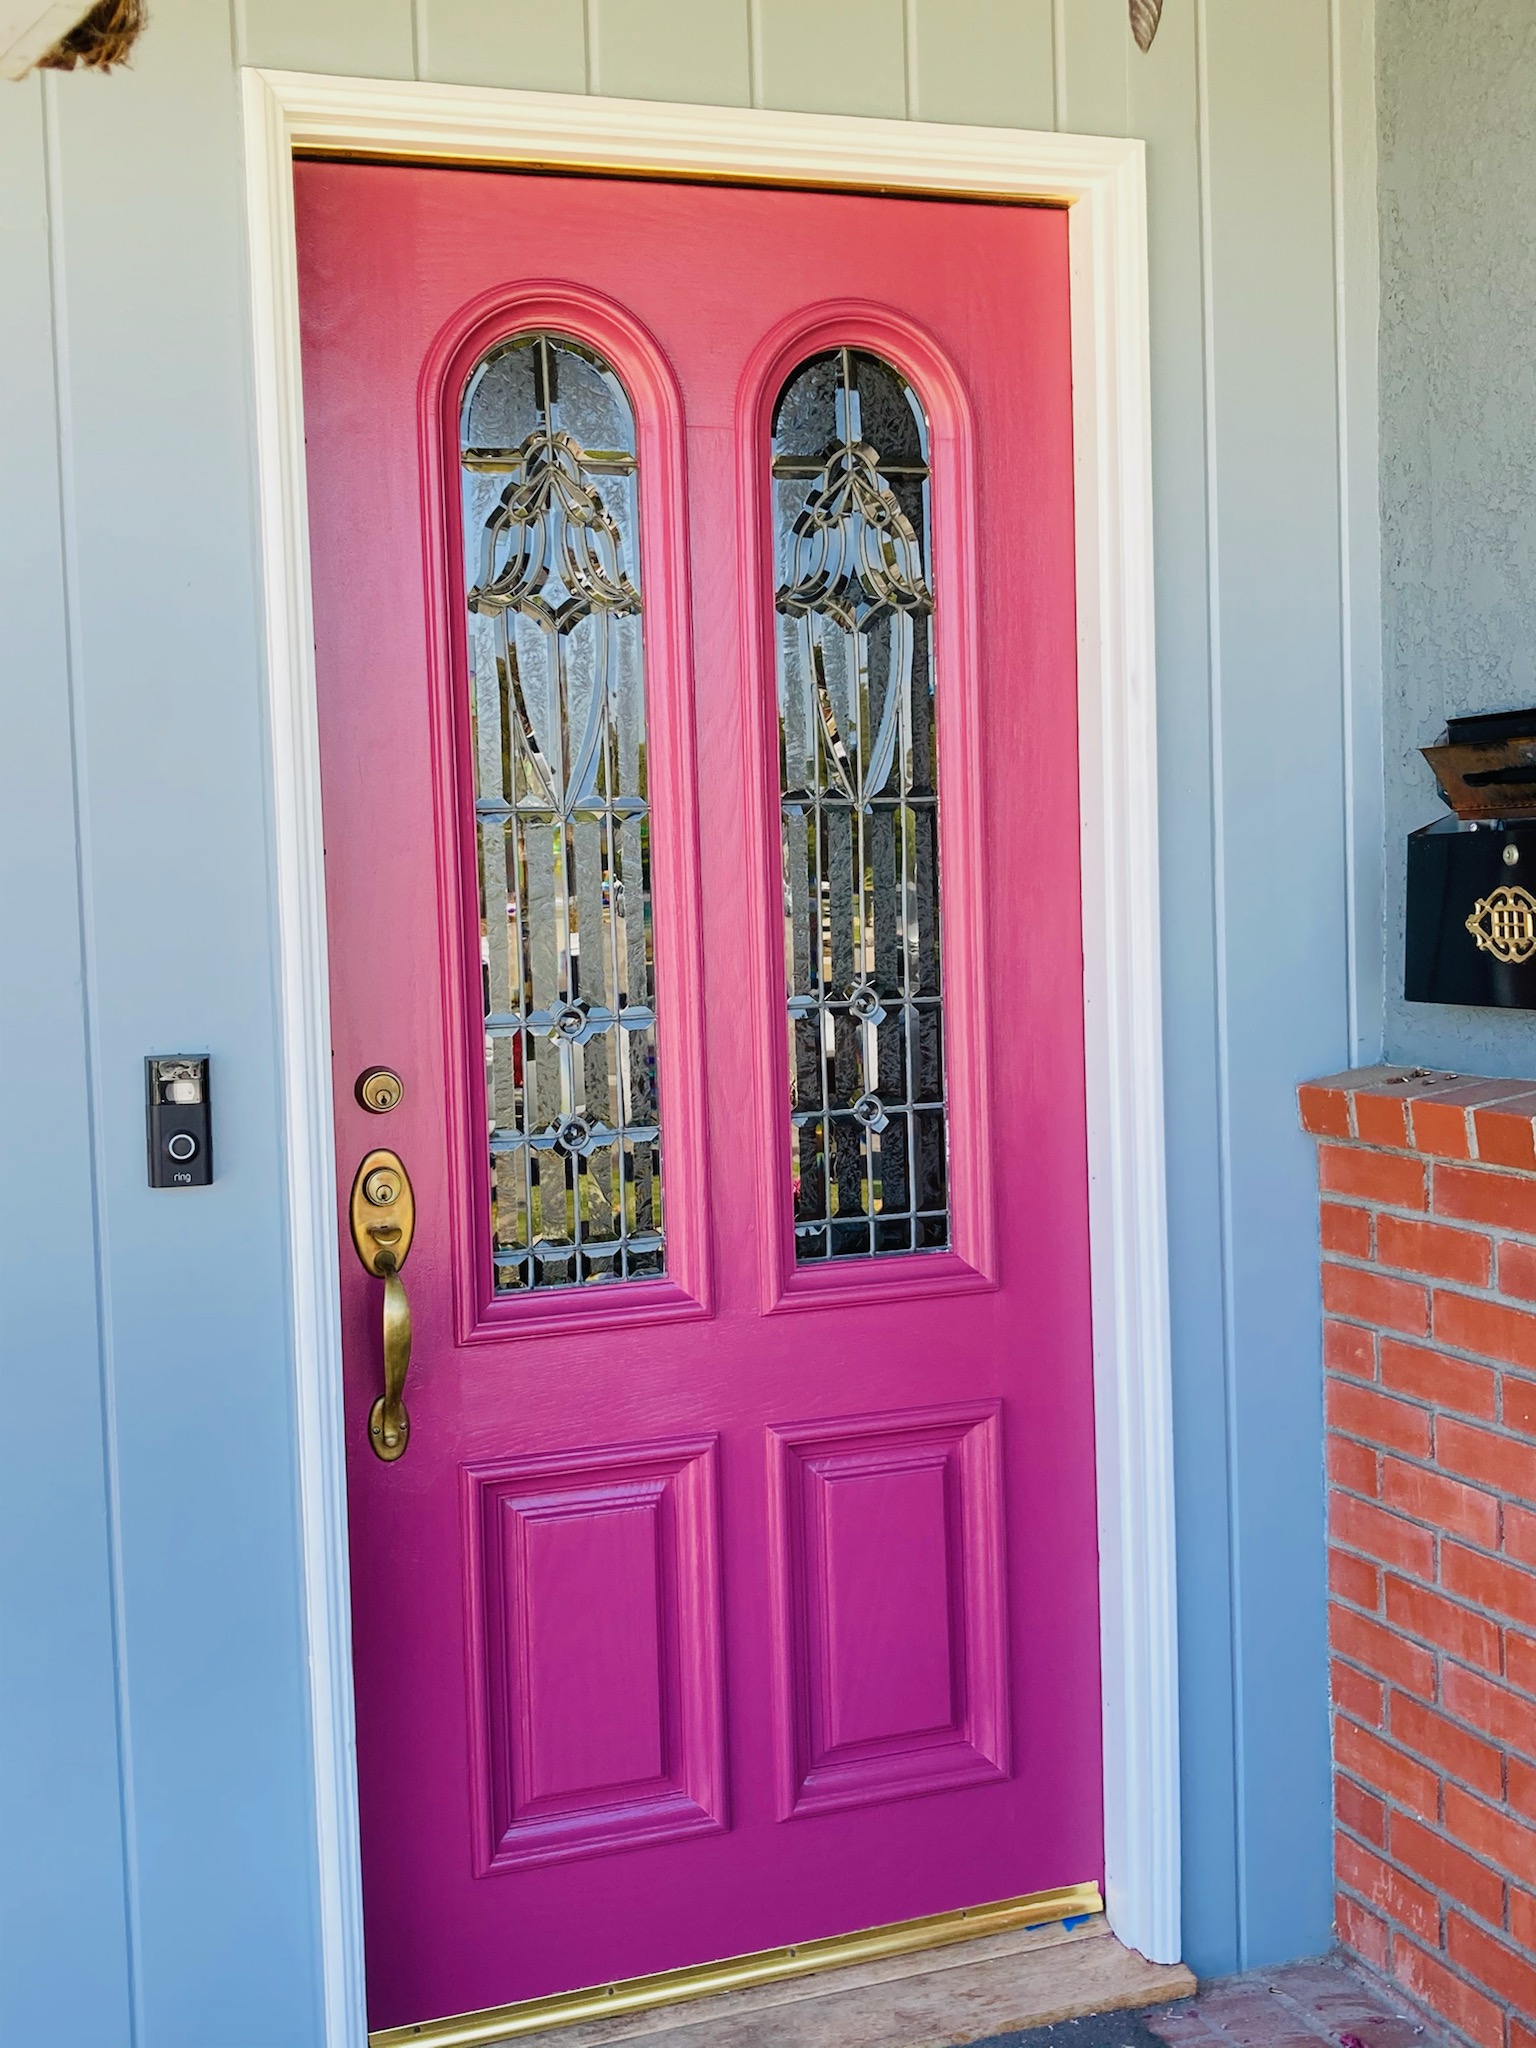 Front door of house painted light purple.